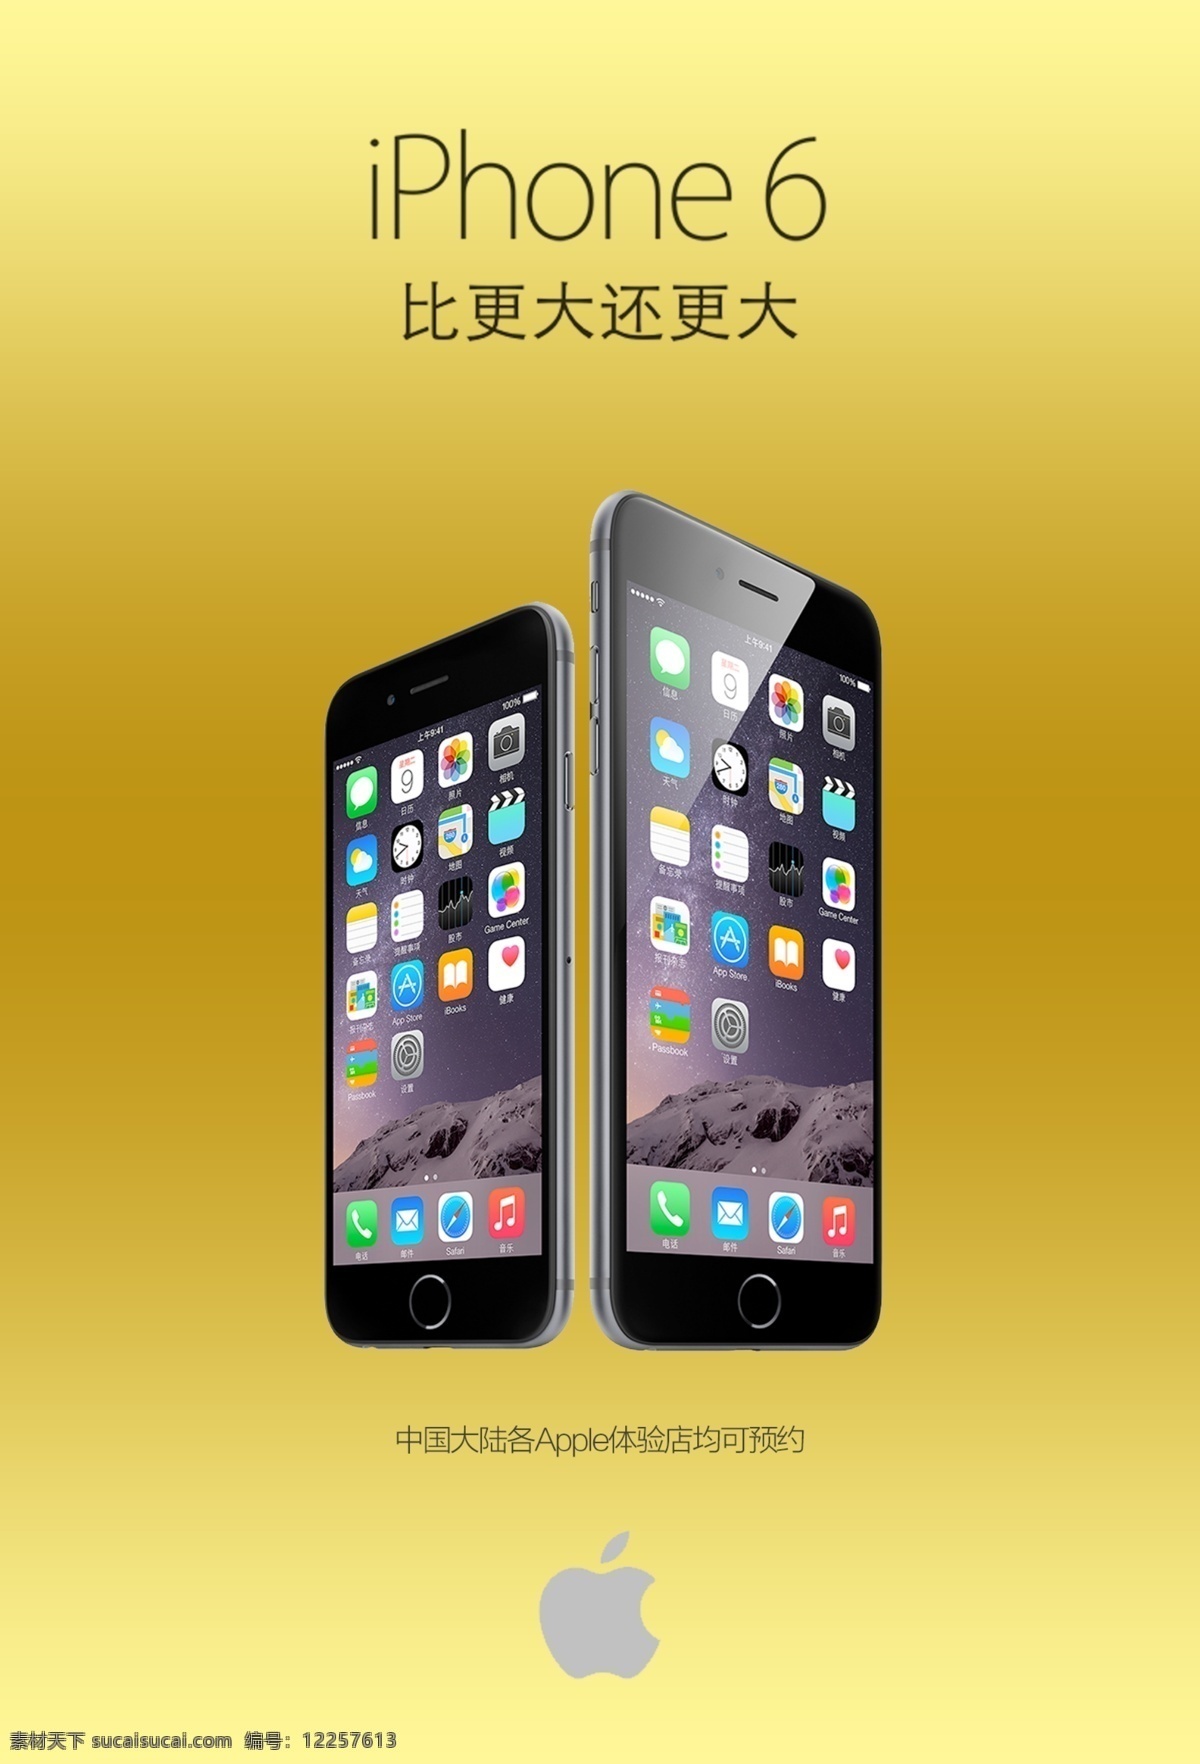 苹果 iphone6 新品 展示 苹果6 大屏 现代 通讯 平面 广告图 现代科技 数码产品 黄色